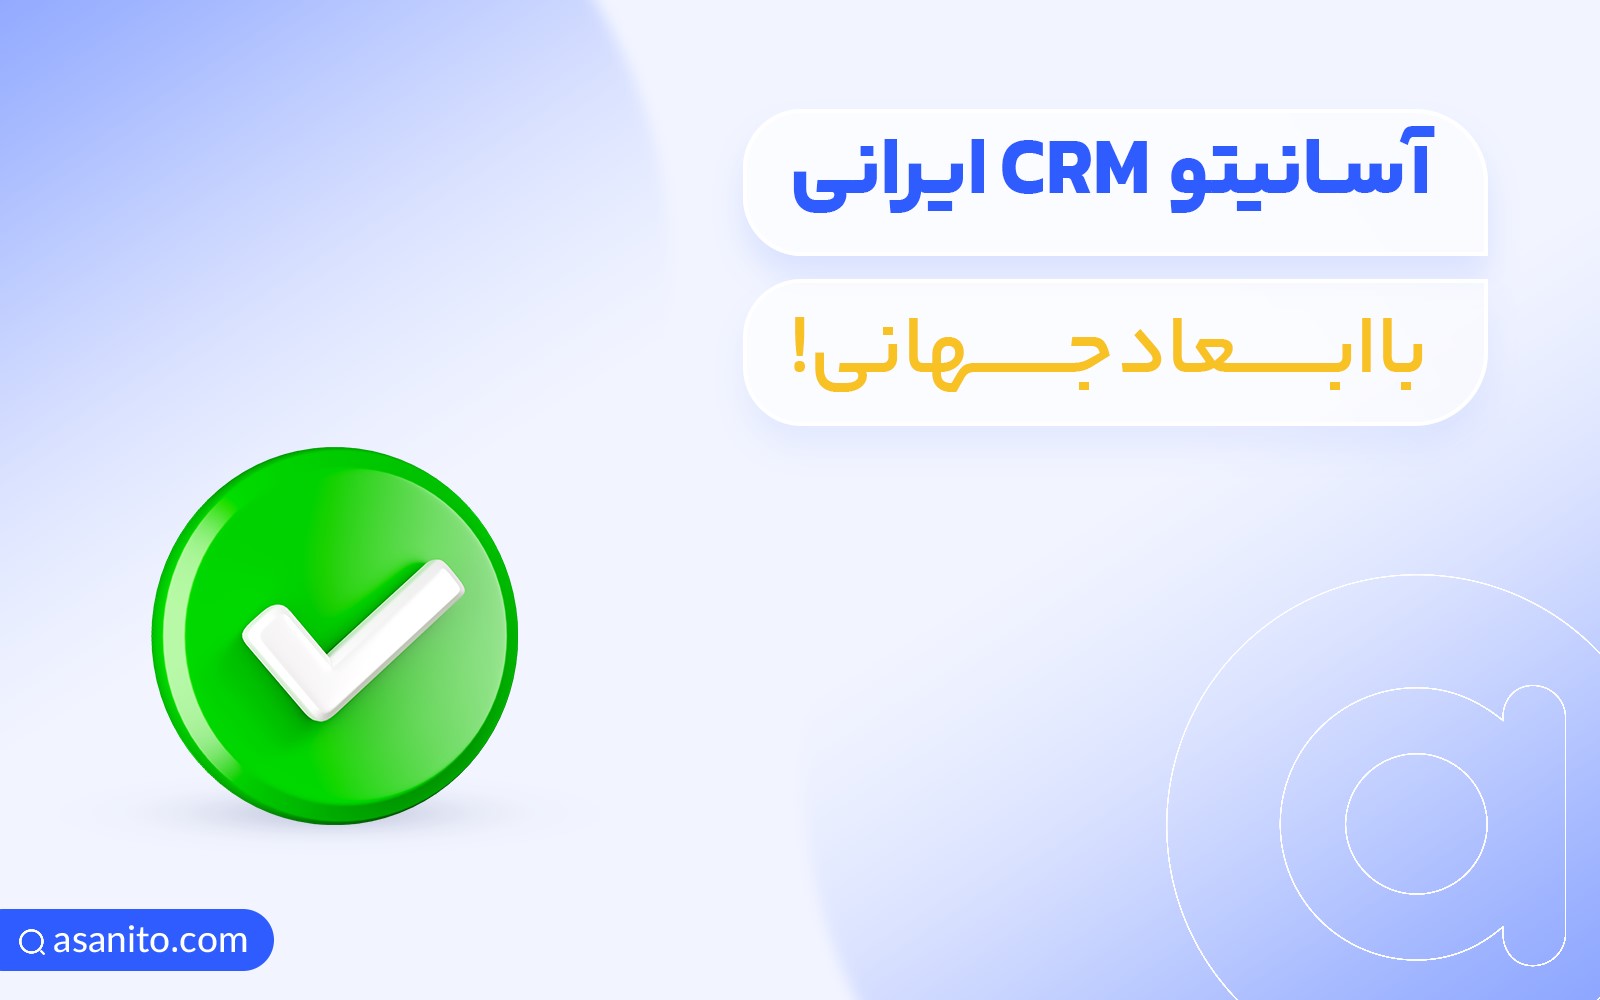  آسانیتو CRM ایرانی با ابعاد جهانی